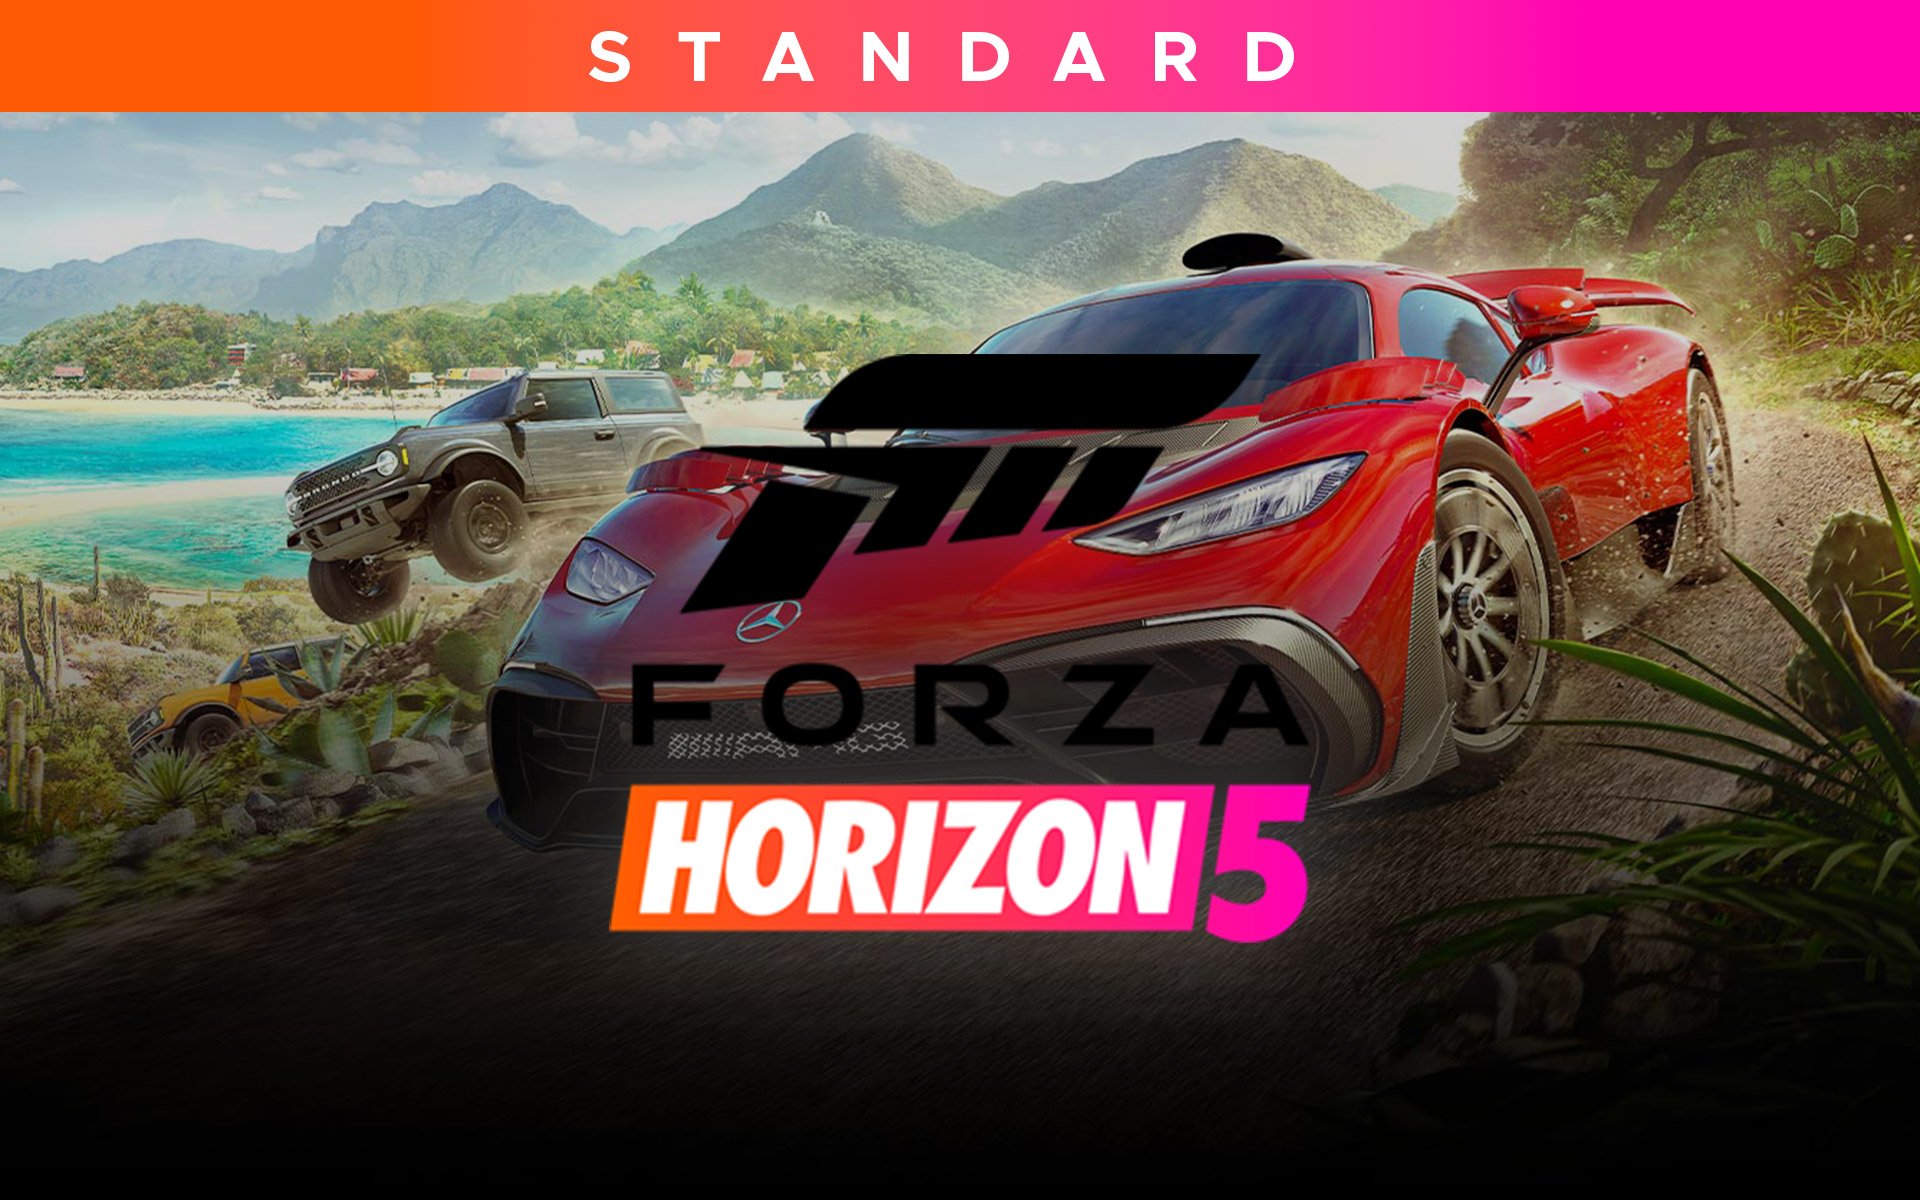 Forza Horizon 5 - Requisitos, Preços E Novidades, 2023